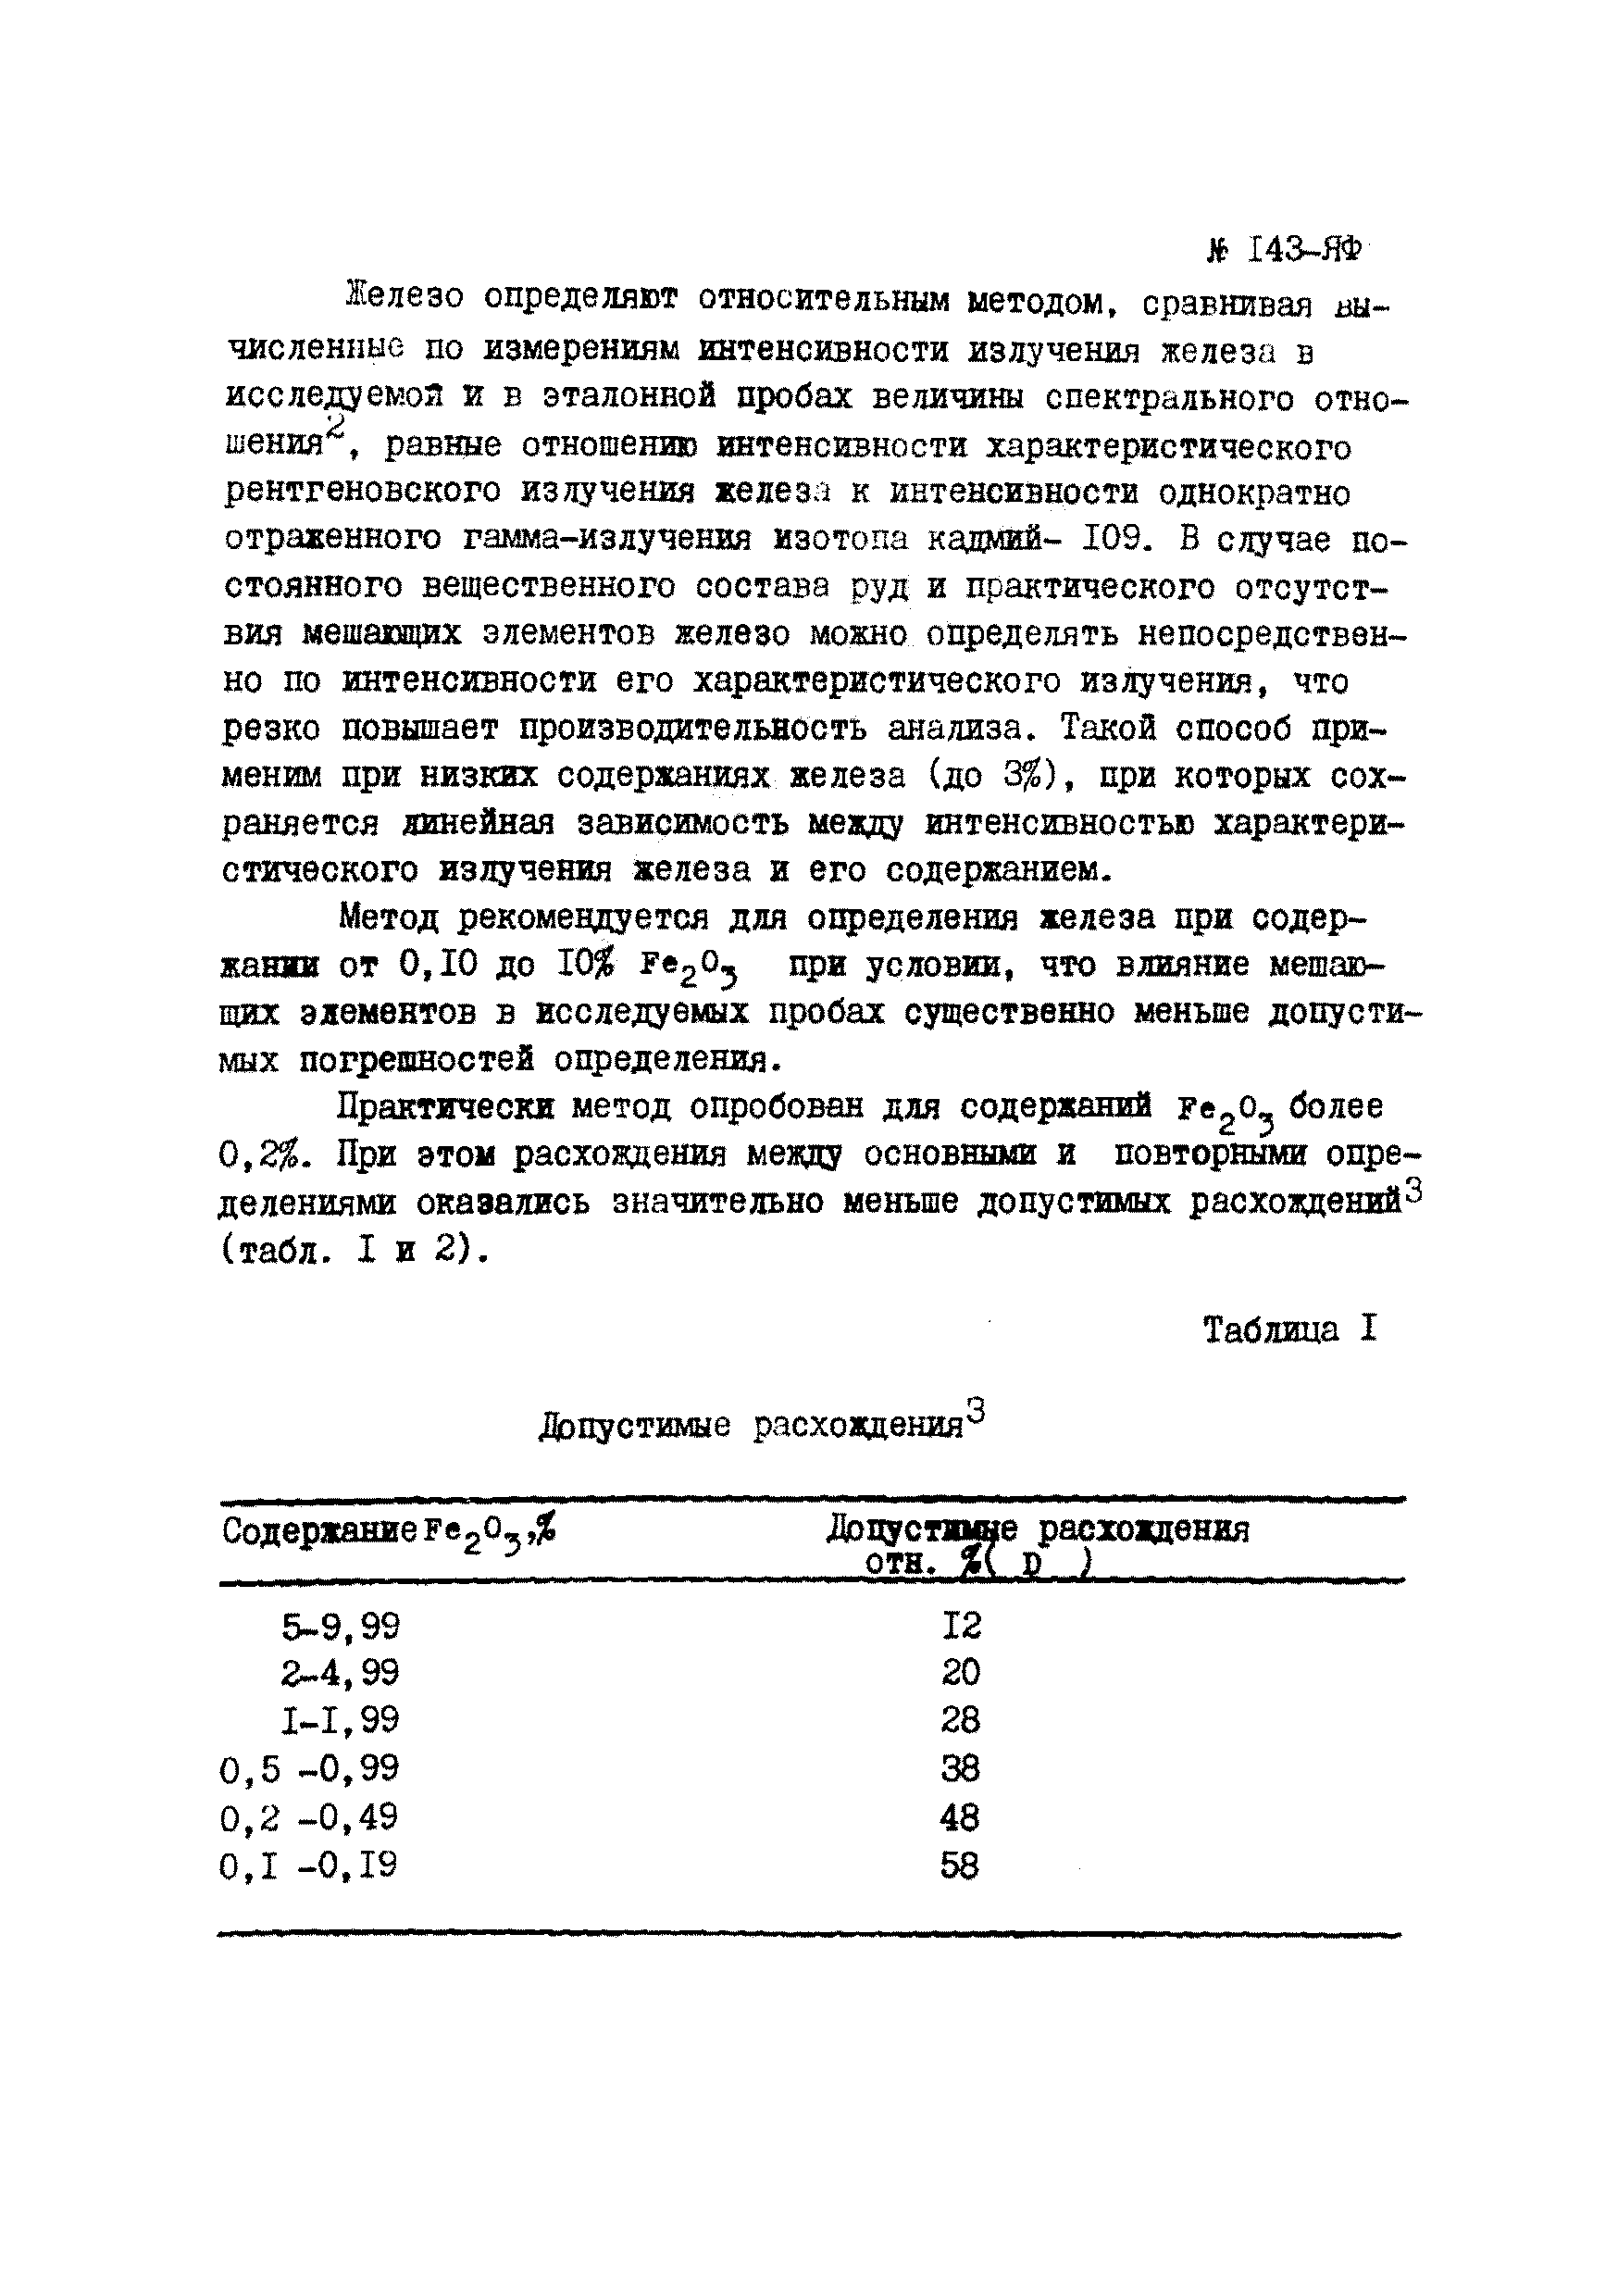 Инструкция НСАМ 143-ЯФ